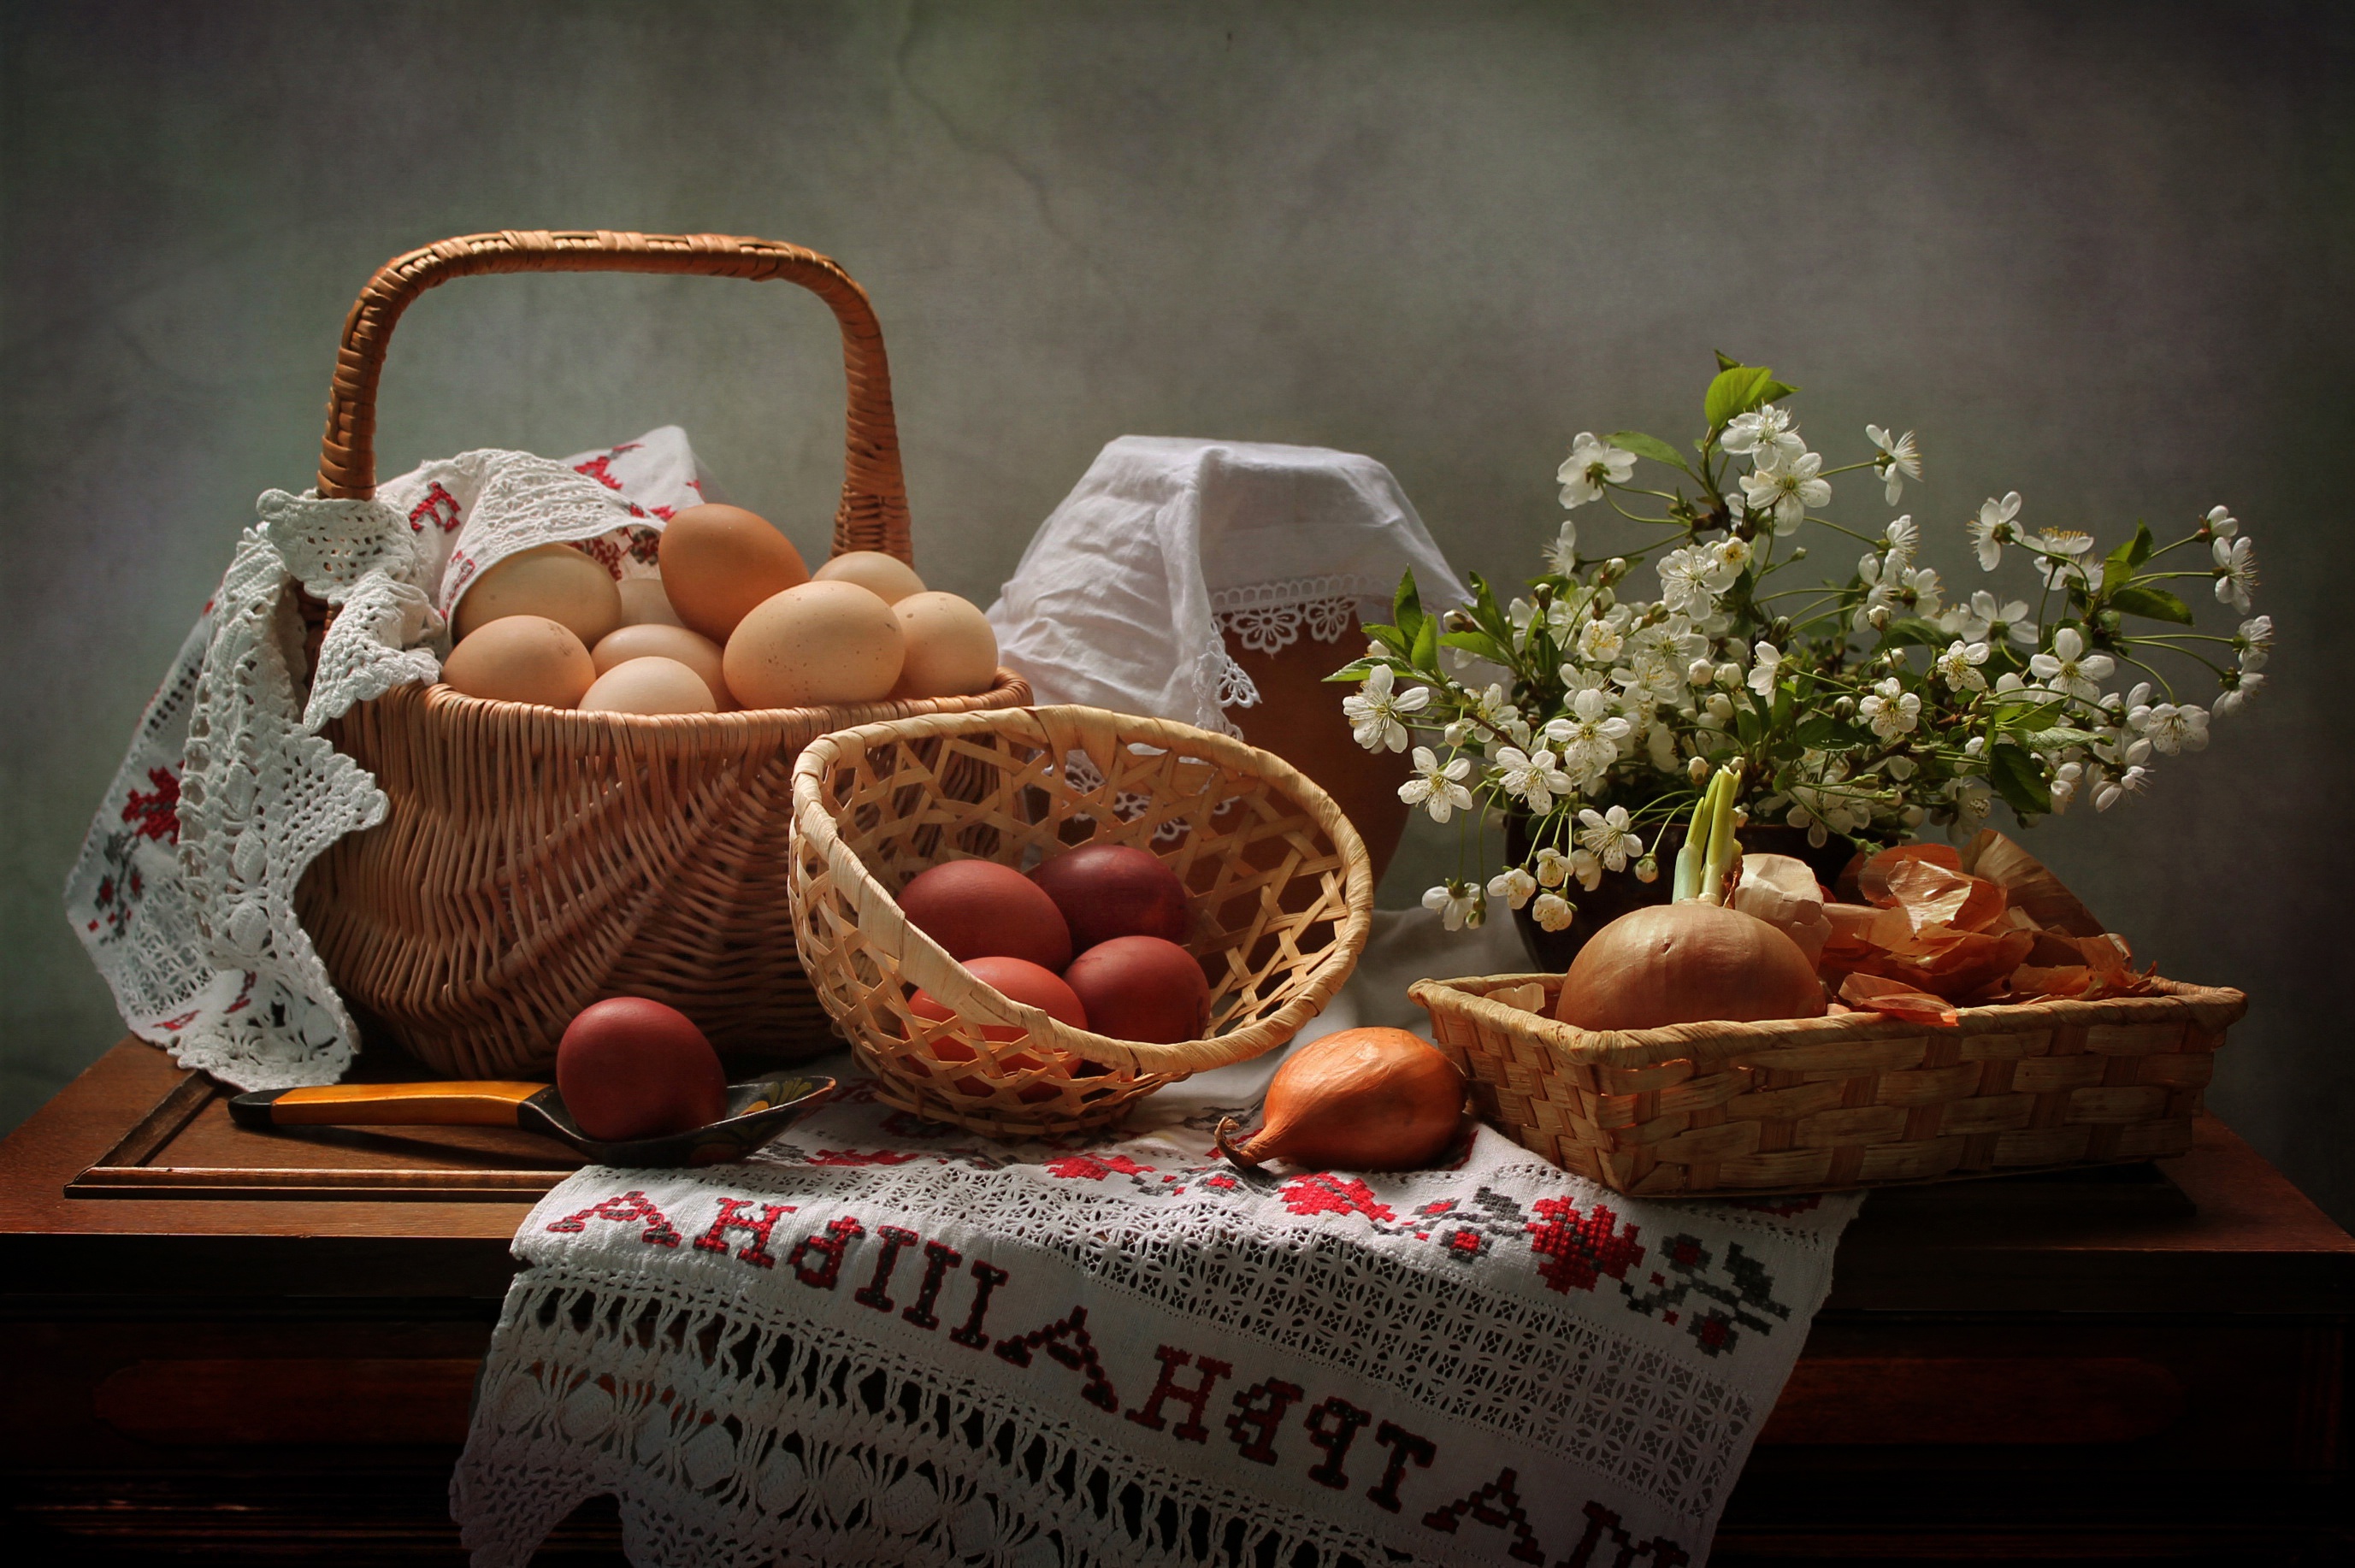 food, still life, basket, egg, flower, onion, white flower